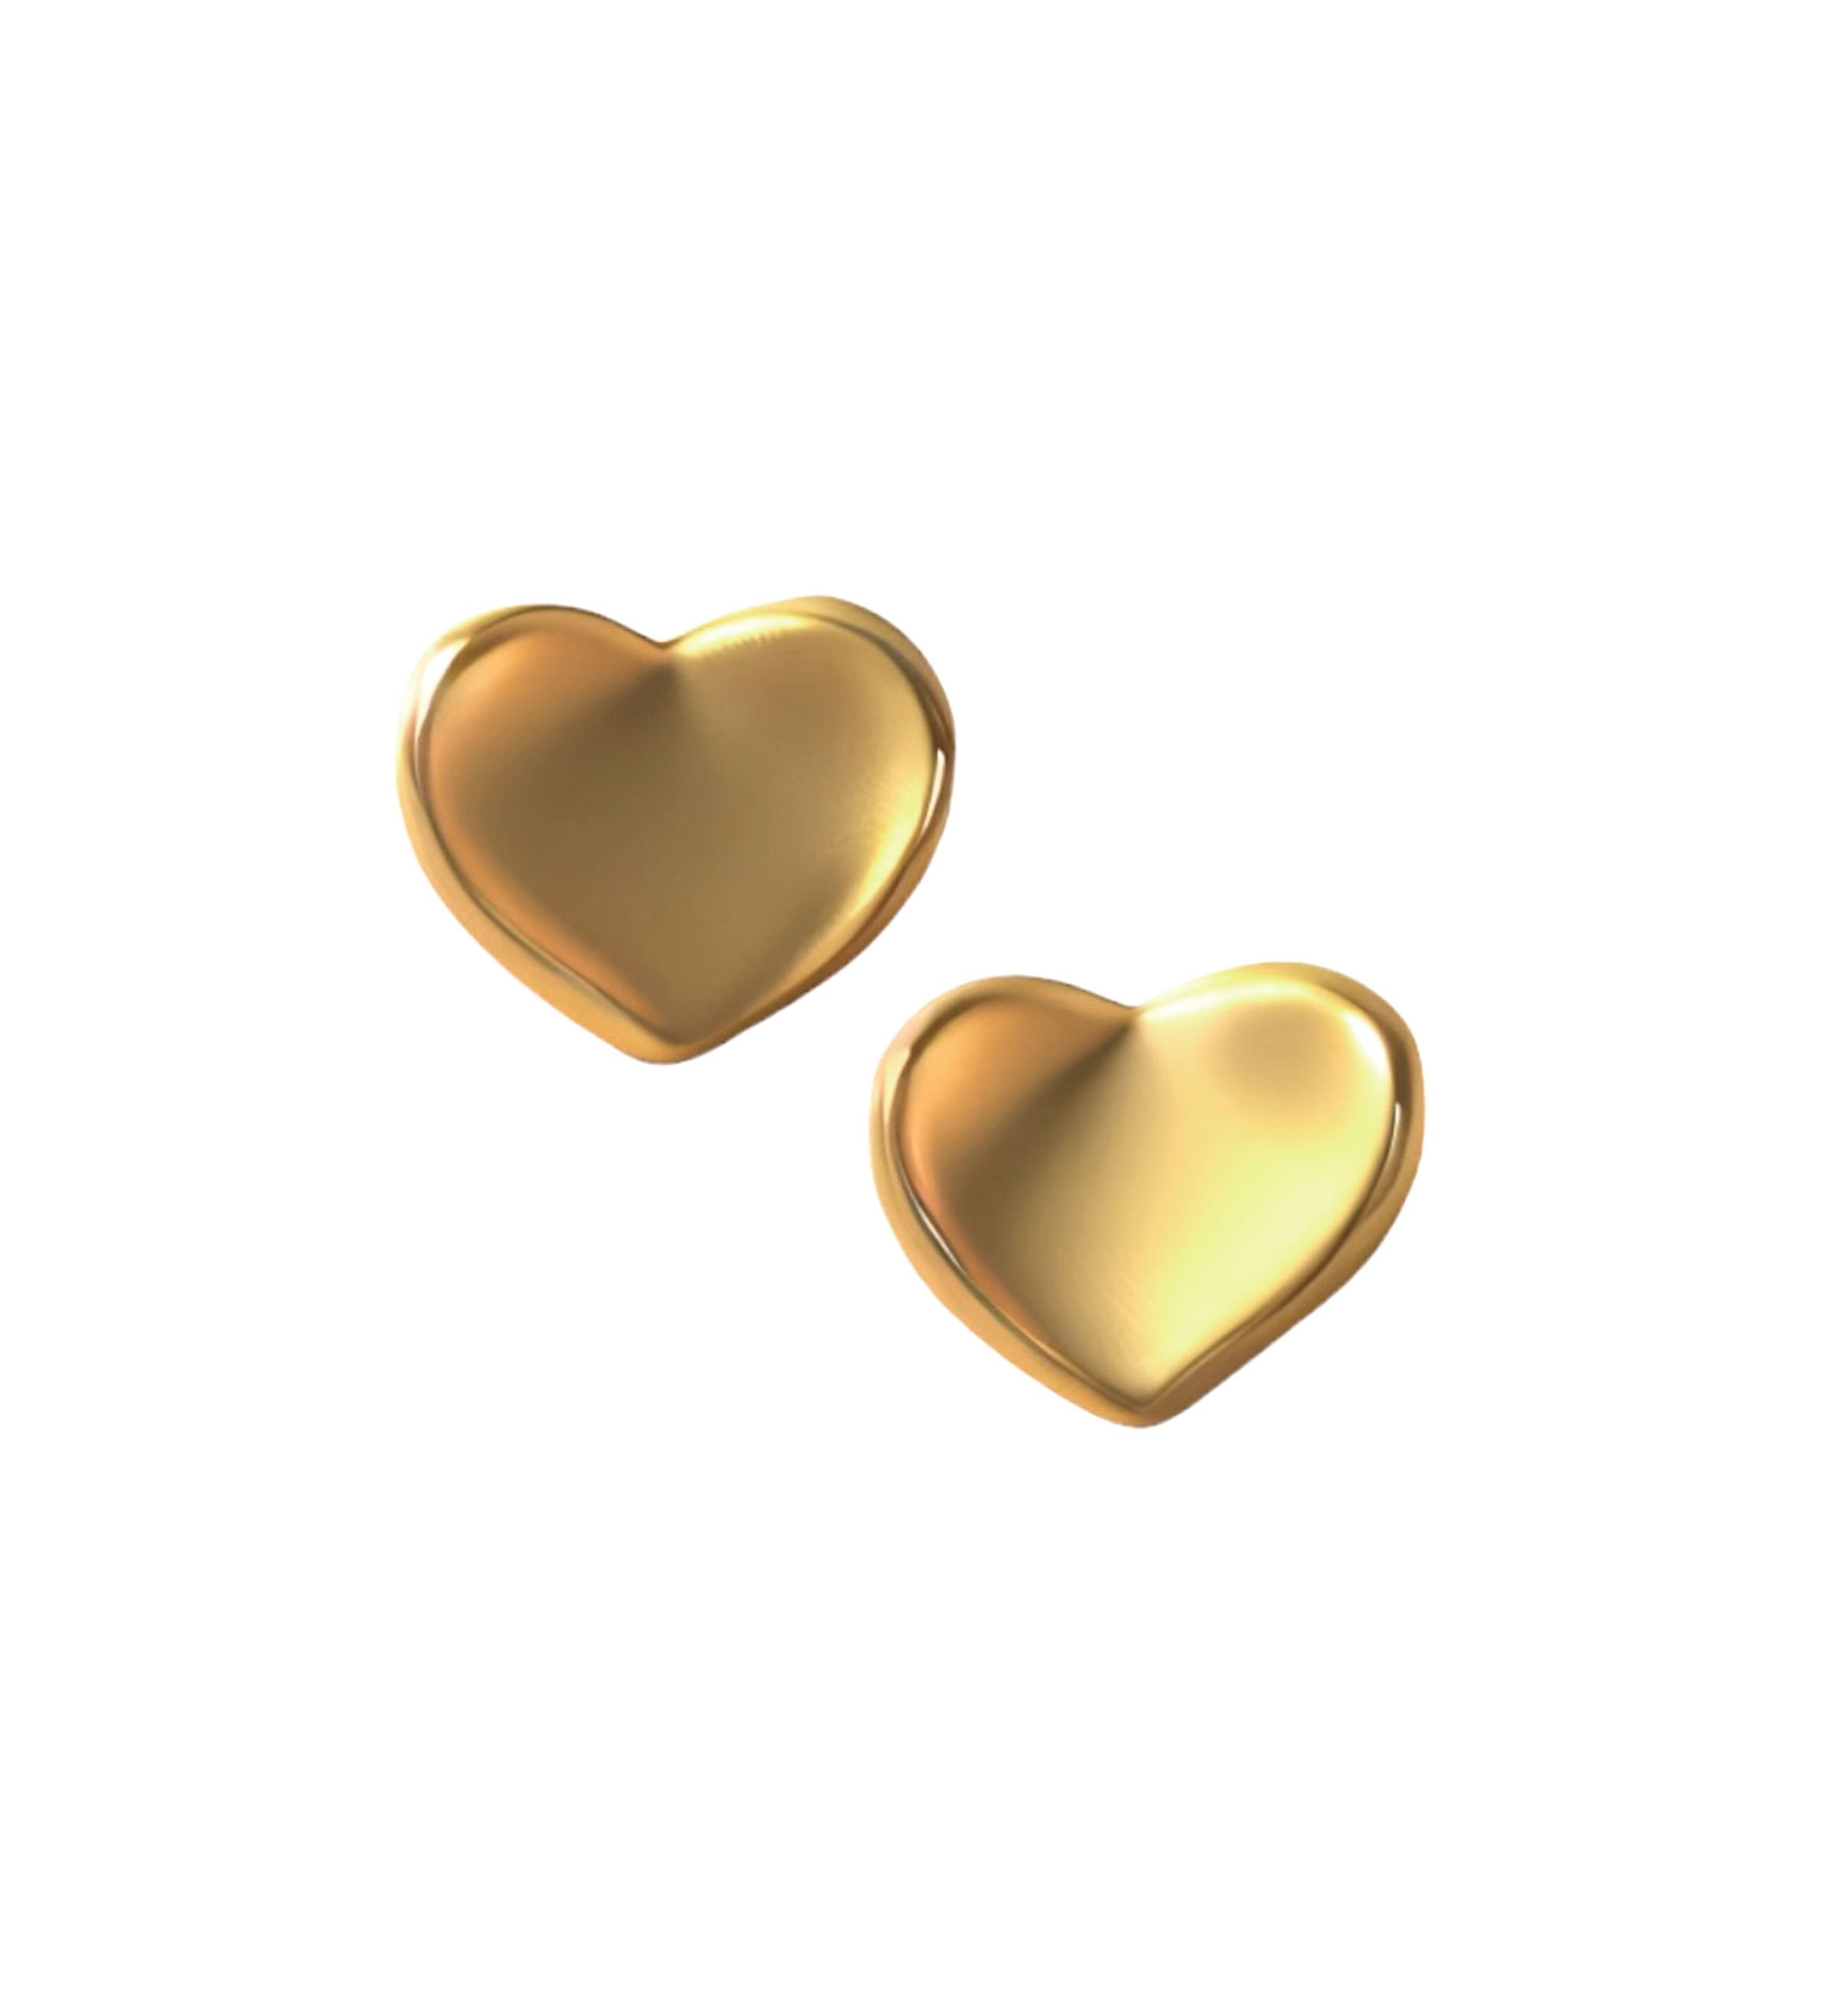 pendientes oro amarillo 18k forma corazon